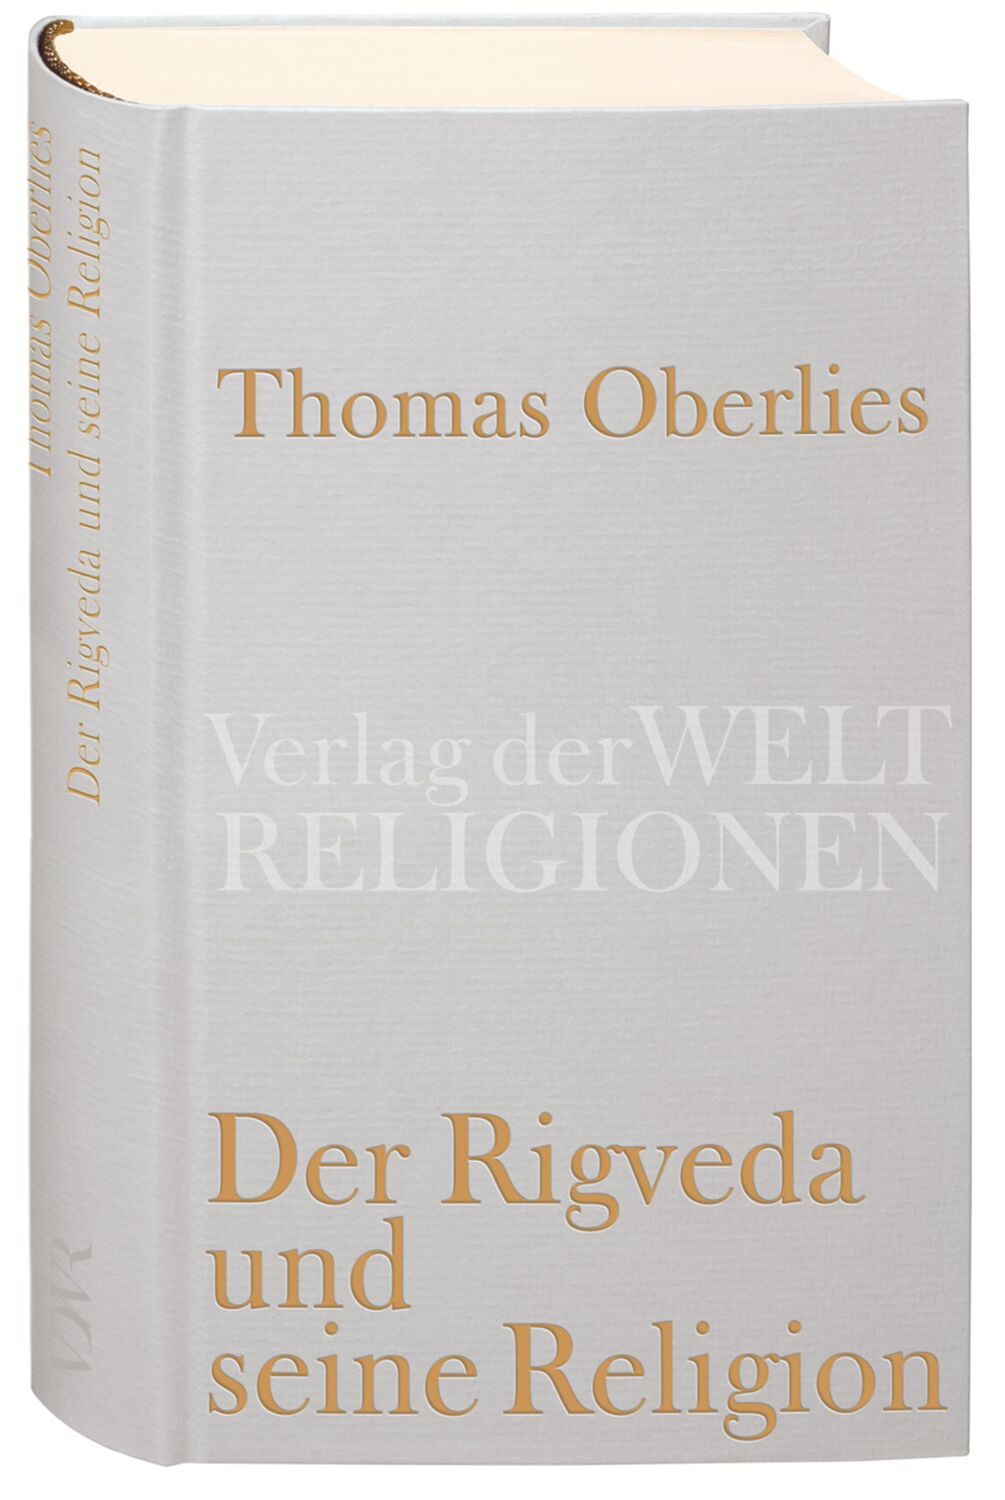 Der Rigveda und seine Religion - Oberlies, Thomas